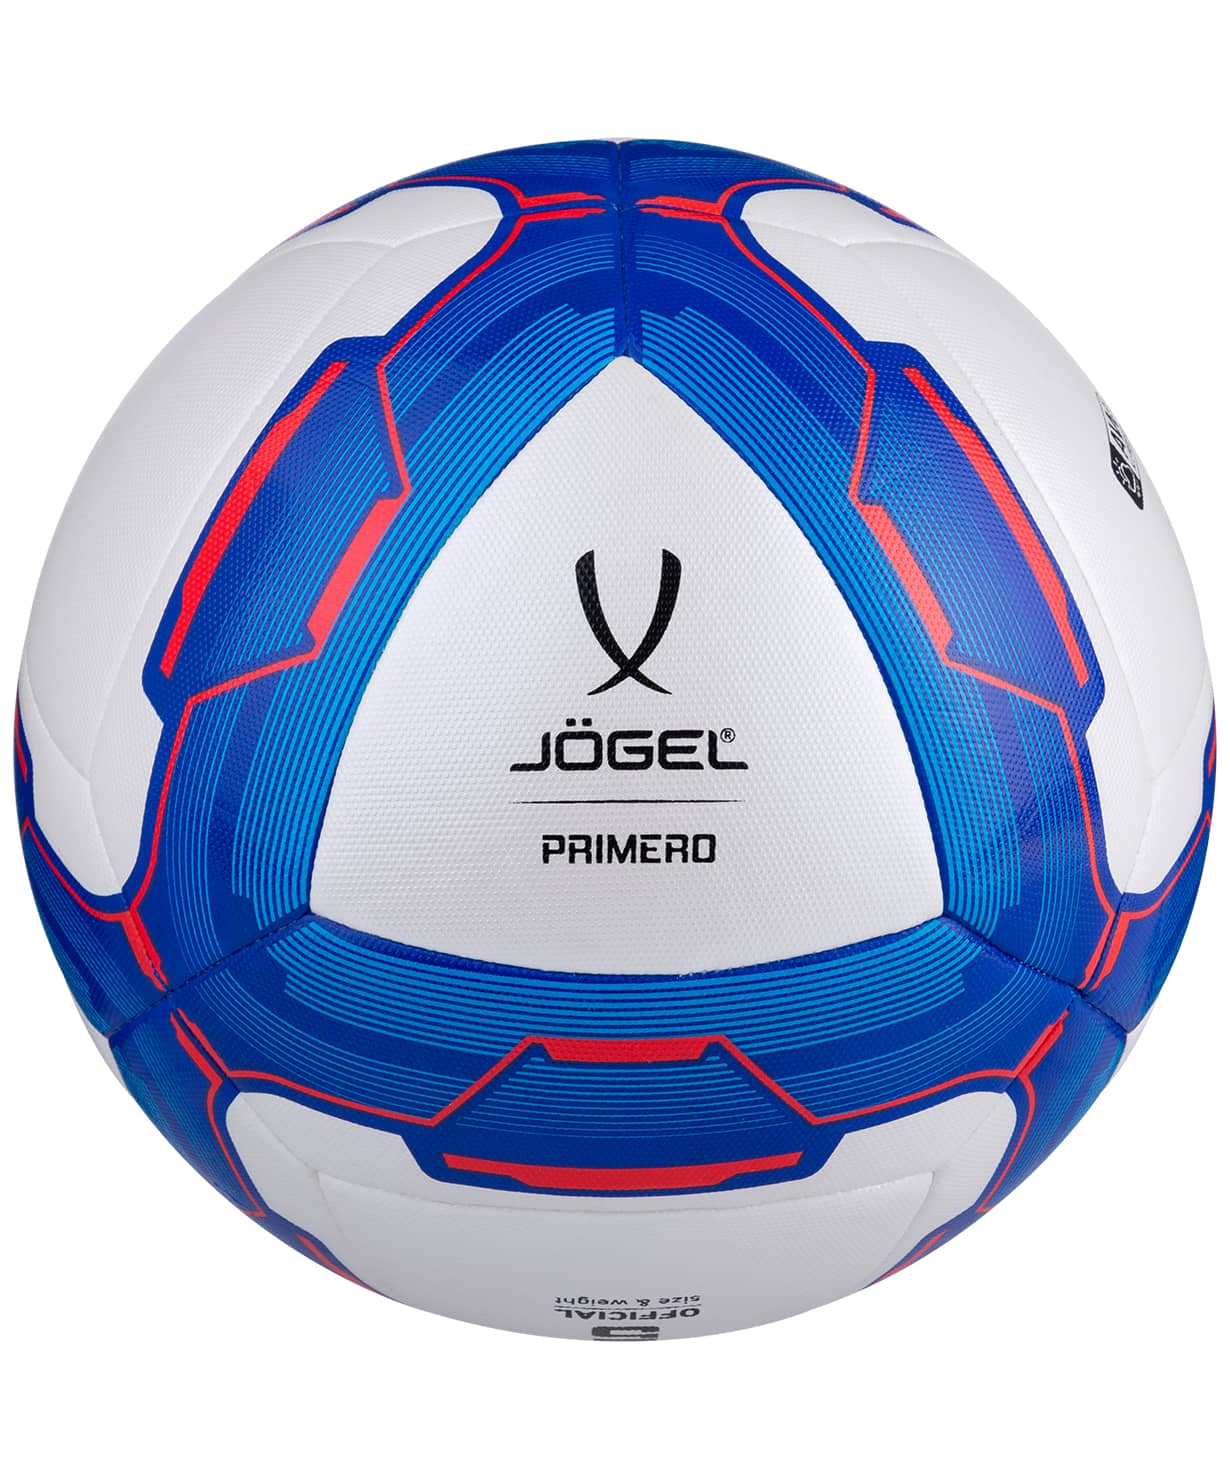 фото Jögel PRIMERO мяч футбольный  размер 5 Football-54 